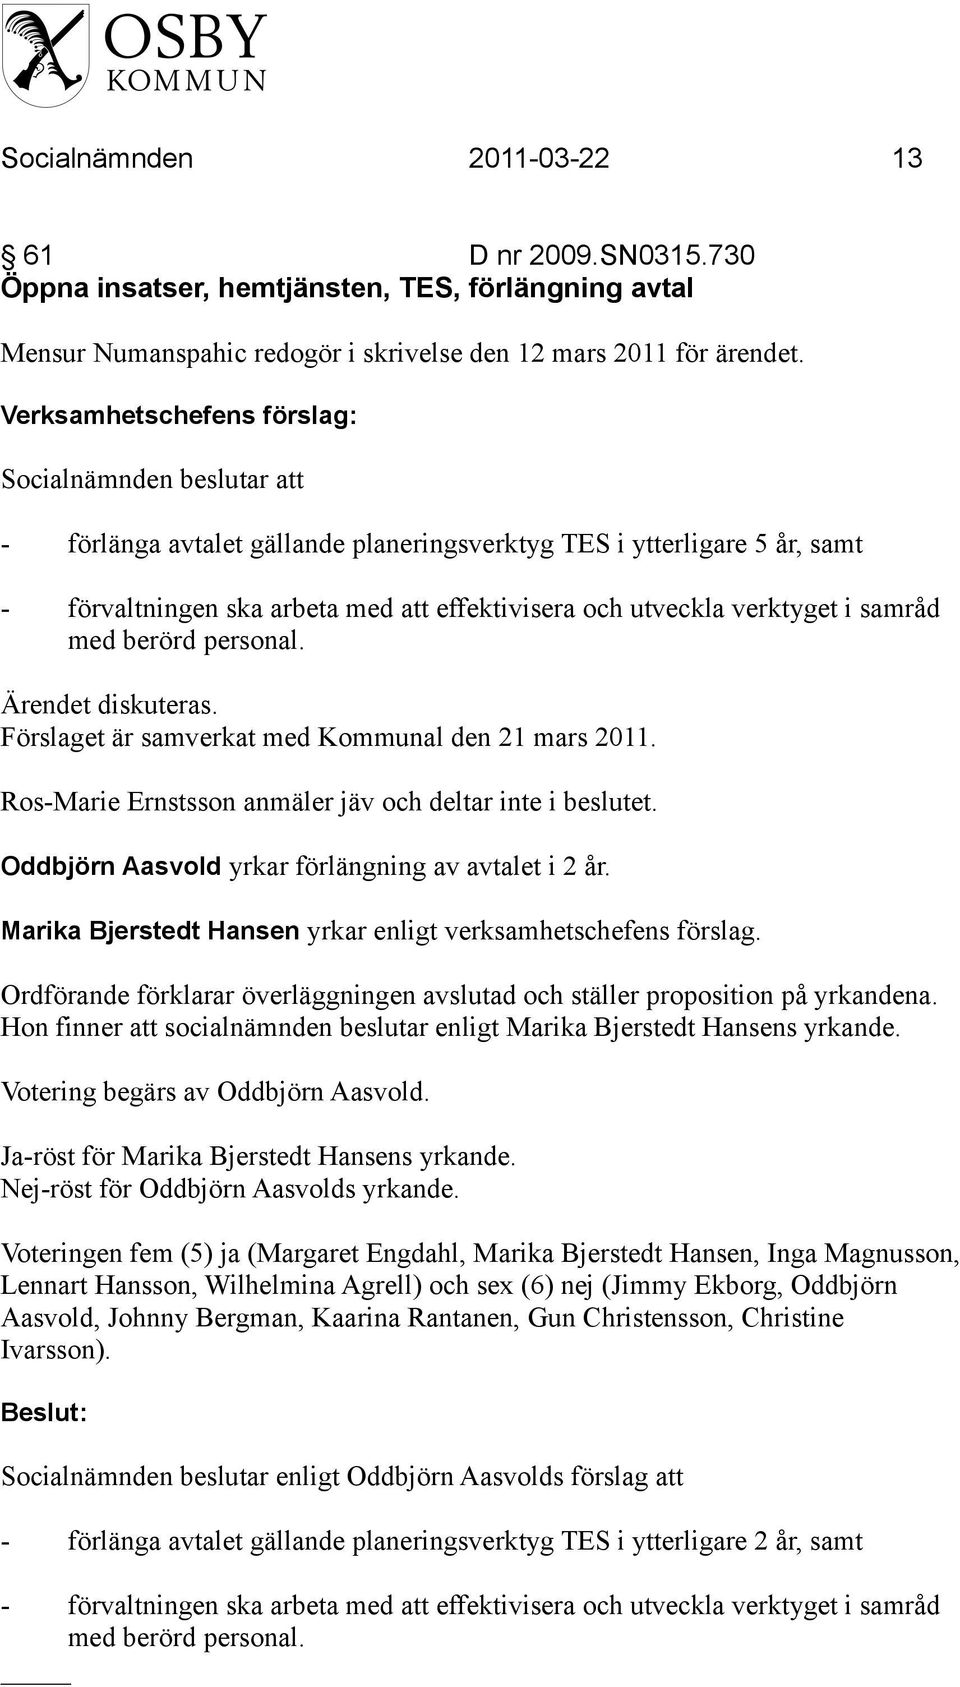 personal. Ärendet diskuteras. Förslaget är samverkat med Kommunal den 21 mars 2011. Ros-Marie Ernstsson anmäler jäv och deltar inte i beslutet. Oddbjörn Aasvold yrkar förlängning av avtalet i 2 år.